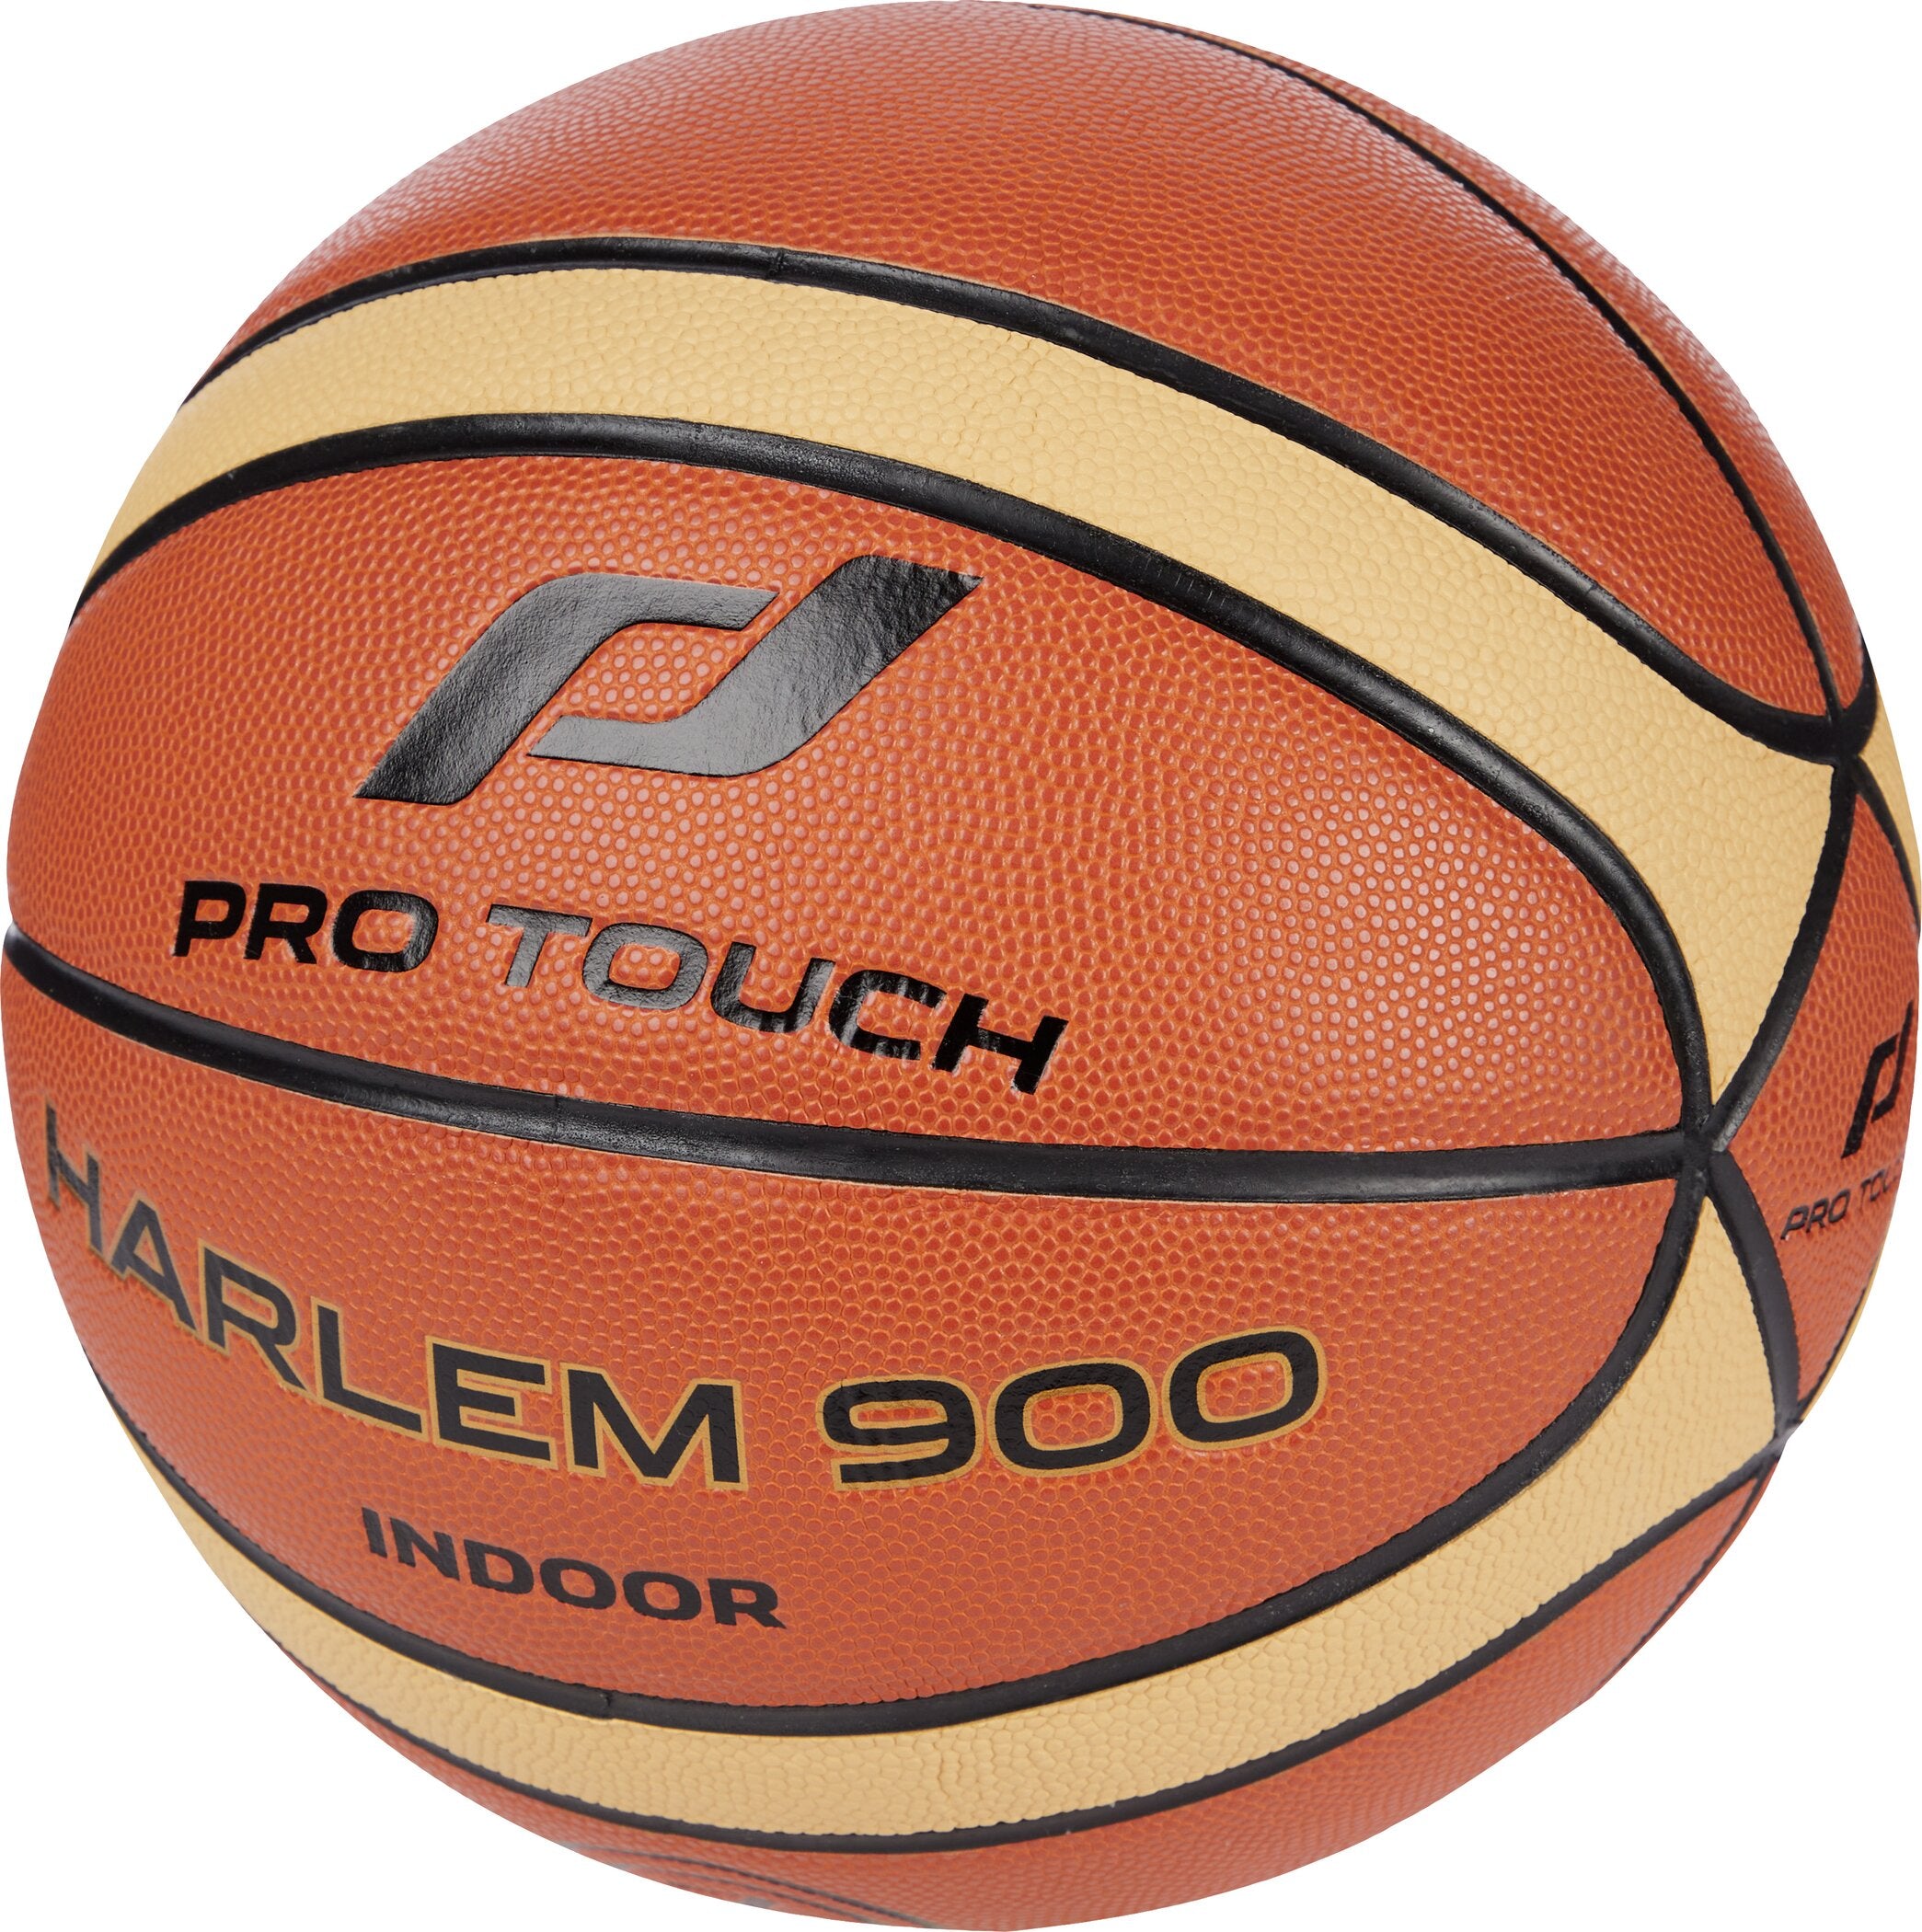 Basketball Harlem 900